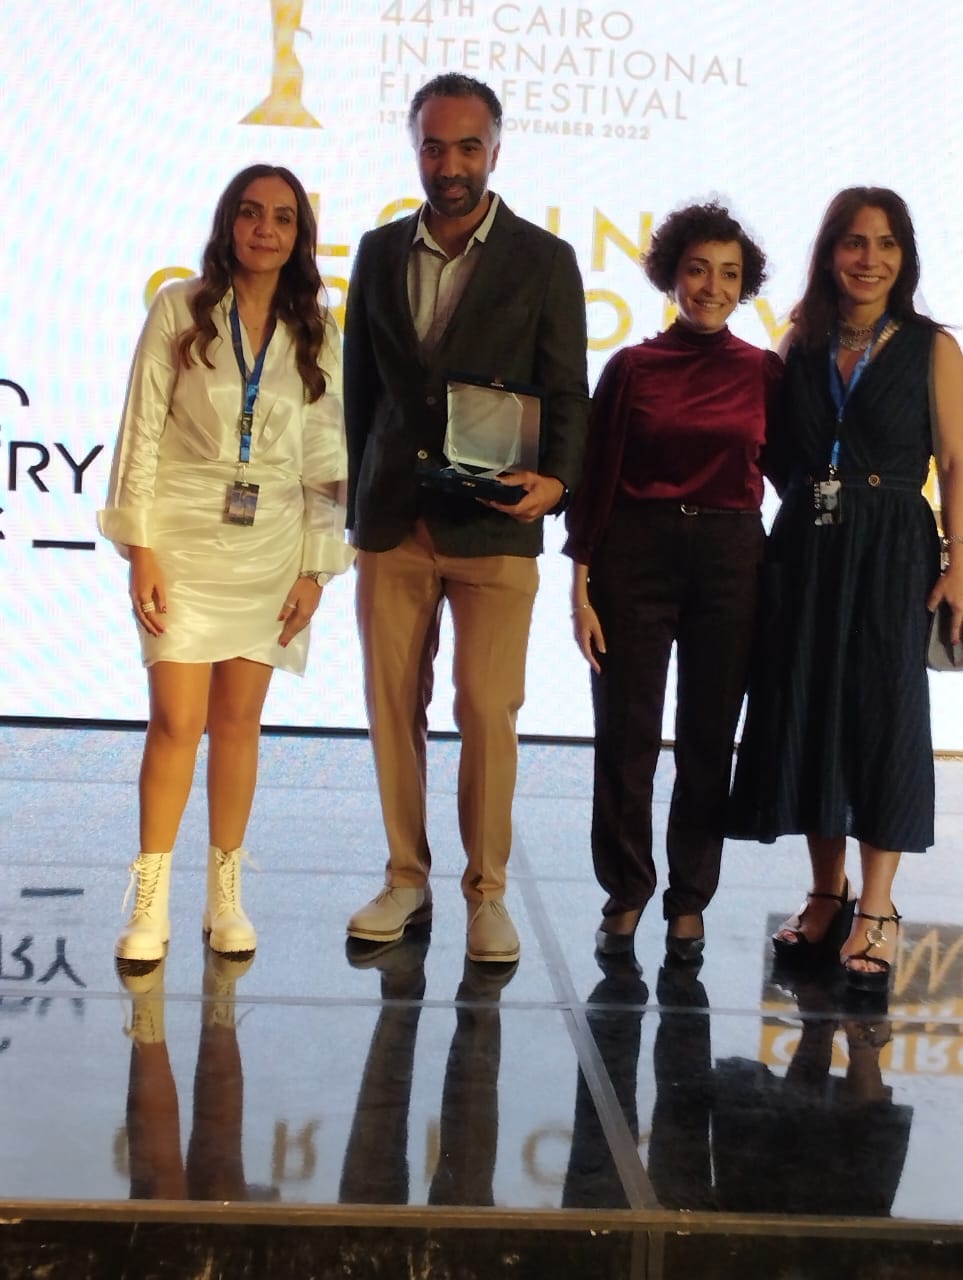 فيلم "في تلات أيام" للمخرج تامر عشري يفوز بجائزة قنوات ART بمهرجان القاهرة السينمائي الدولي